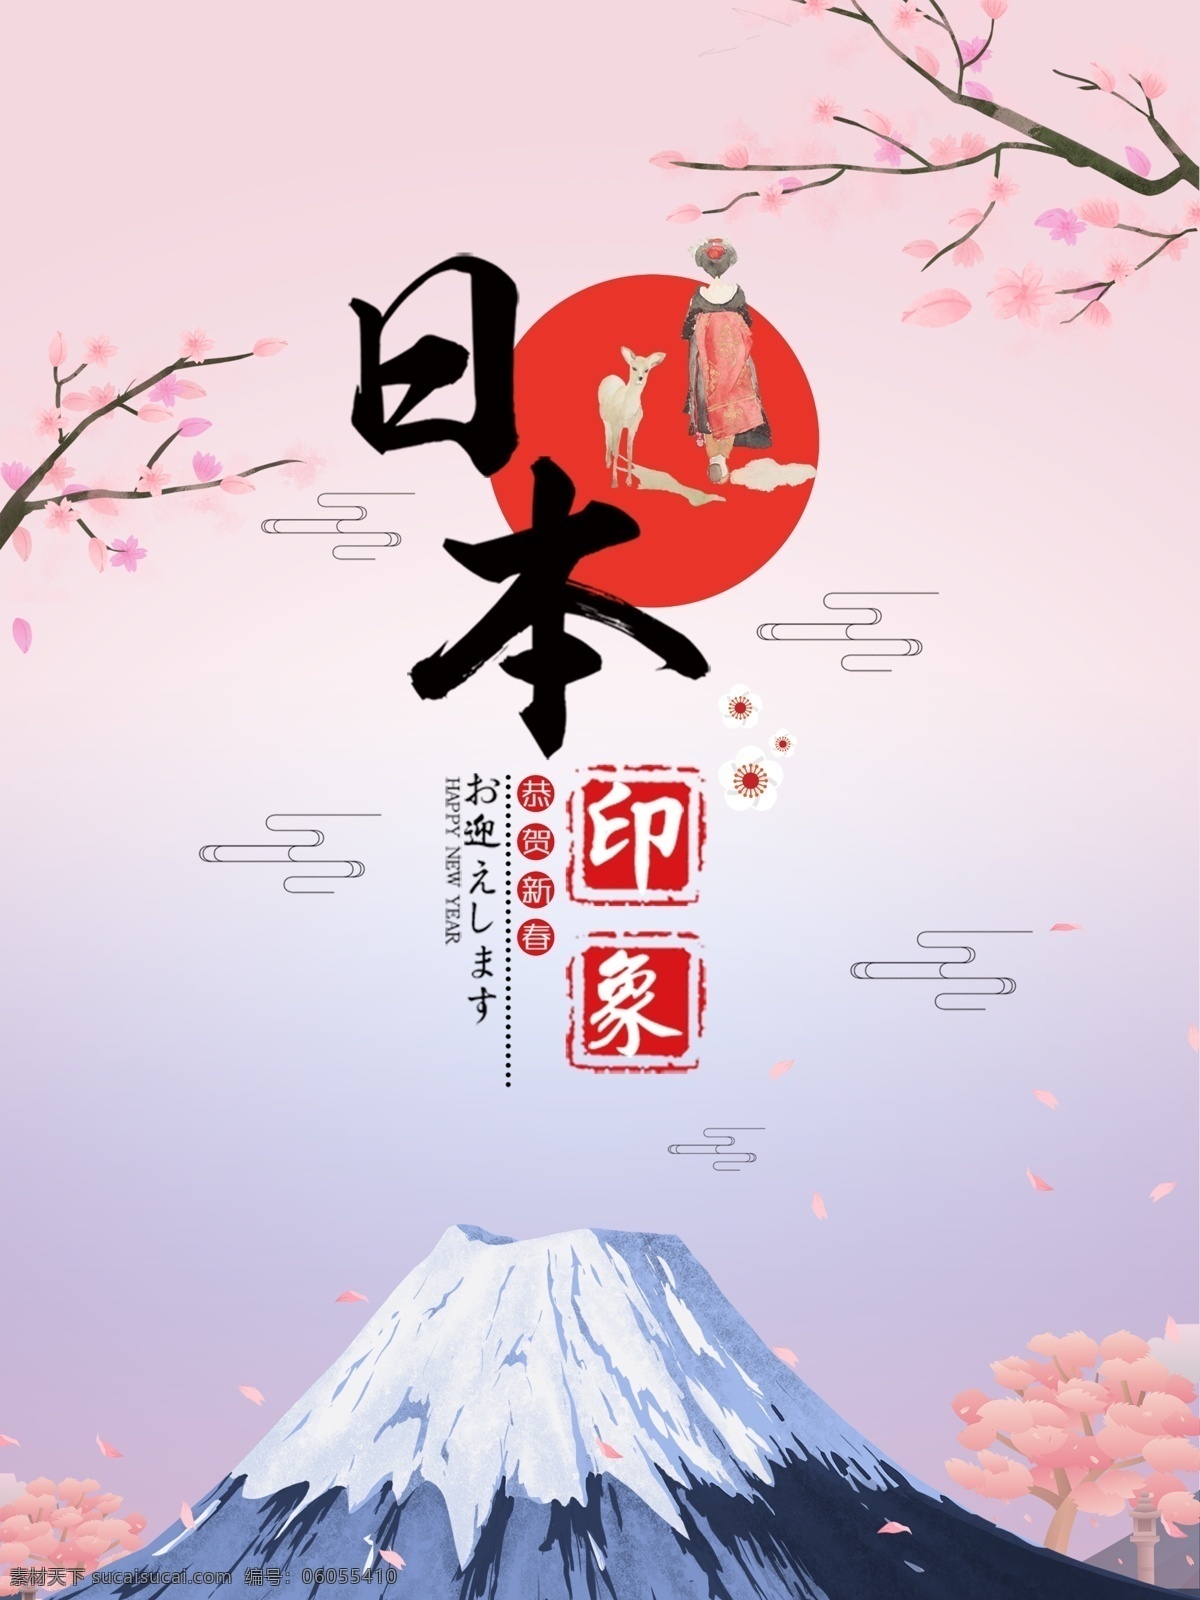 日本旅游广告 日本 旅游广告 日本印象 樱花 旅游 富士山